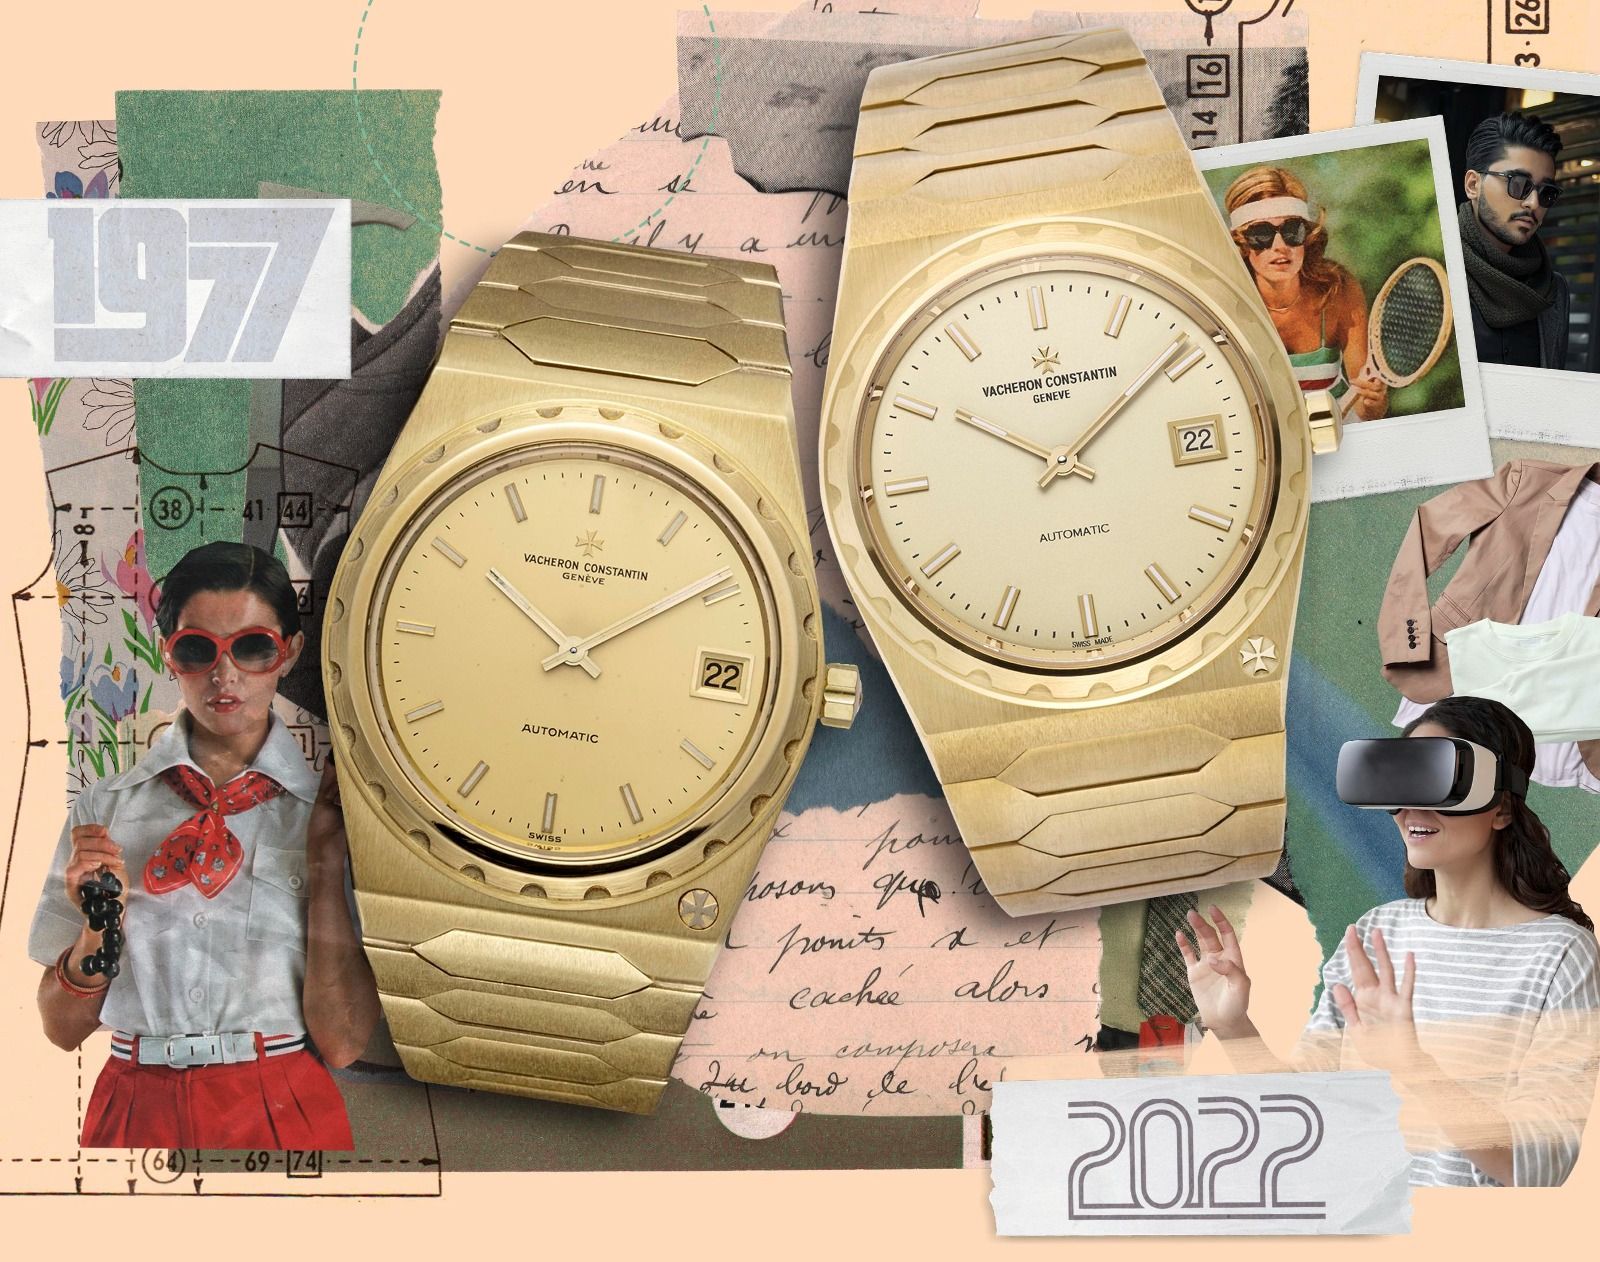 Сравнение Piaget Polo 79 и Vacheron Constantin Historiques 222: какие роскошные часы доминируют?